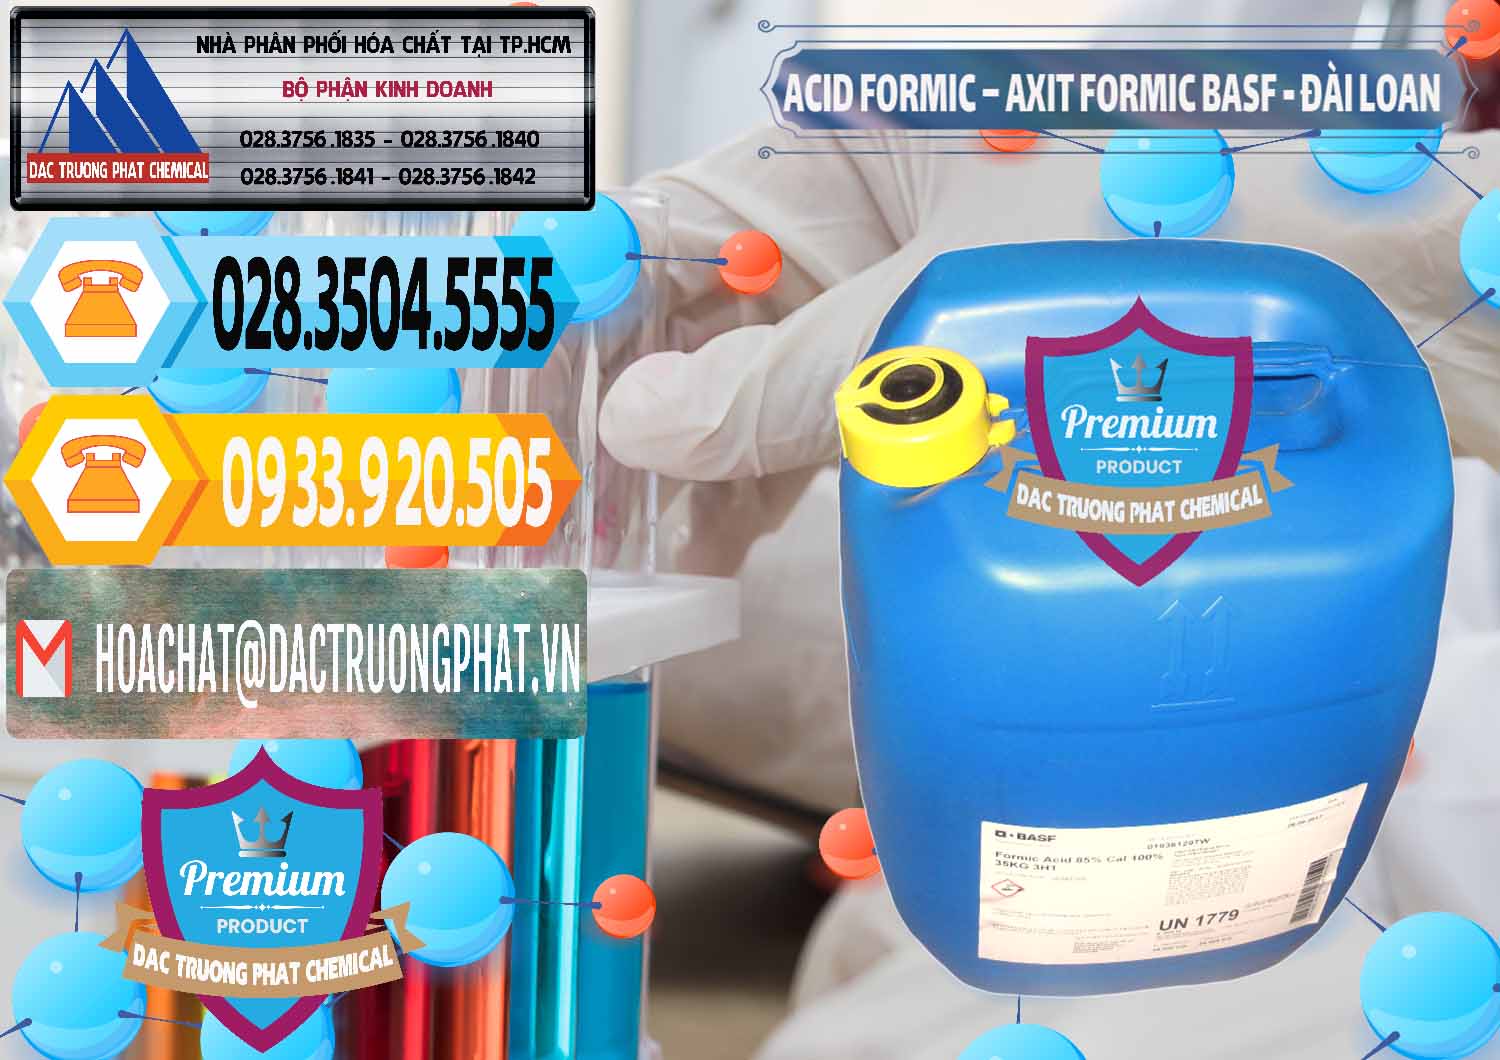 Đơn vị chuyên bán ( phân phối ) Acid Formic - Axit Formic 85% BASF Đài Loan Taiwan - 0027 - Nơi cung cấp ( phân phối ) hóa chất tại TP.HCM - hoachattayrua.net